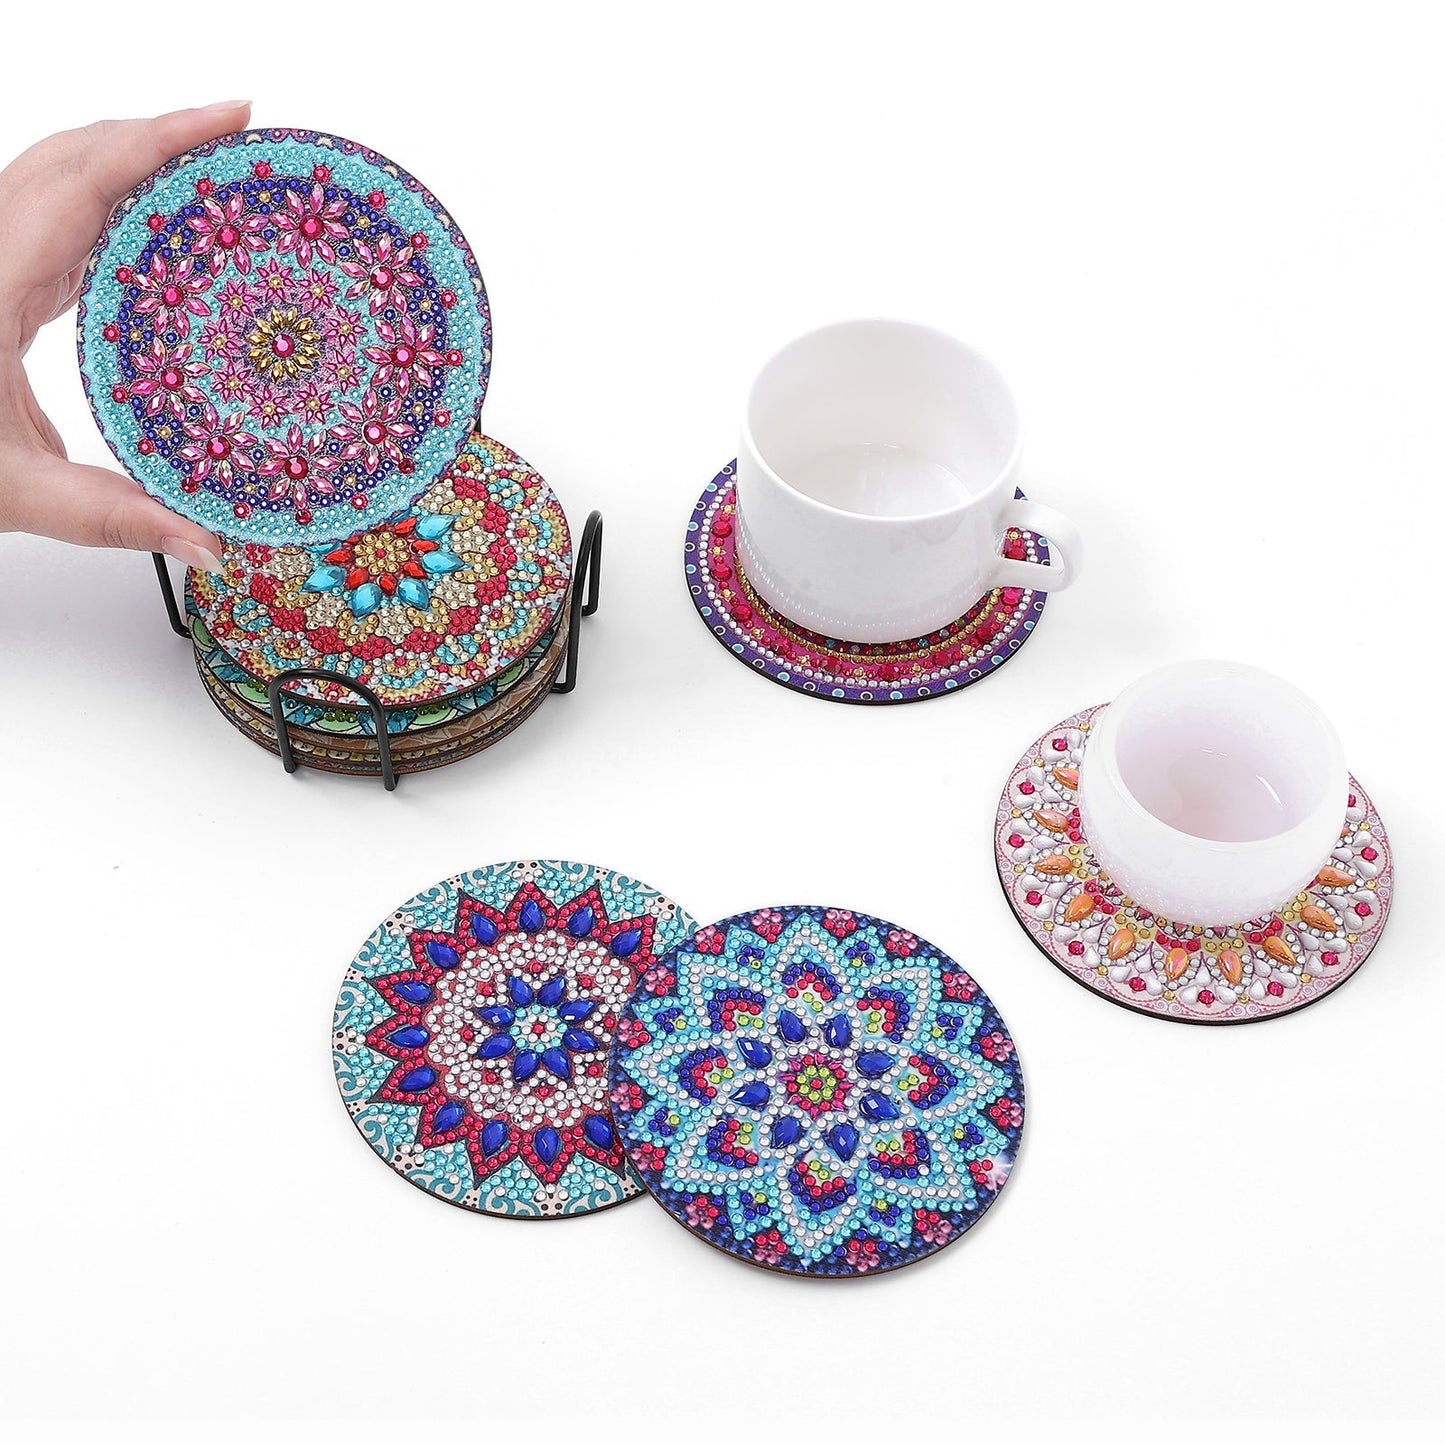 🔥LAST DAY 80% OFF-DIY Mandala I Diamond Painting Coasters